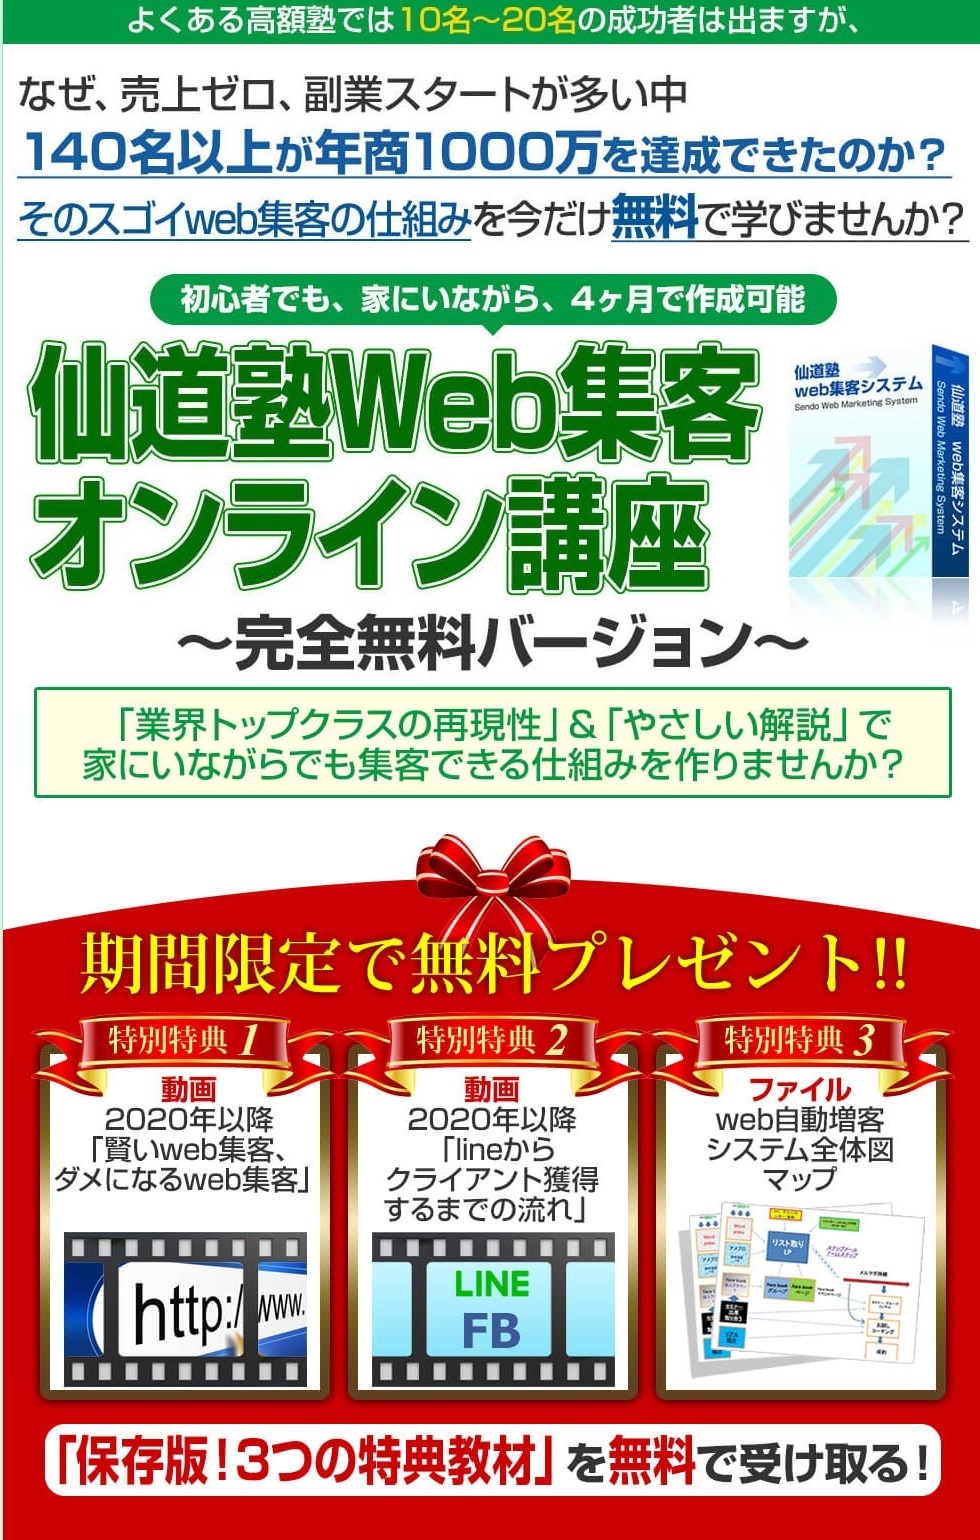 最新のビジネス無料オファー情報 仙道塾web集客オンライン講座